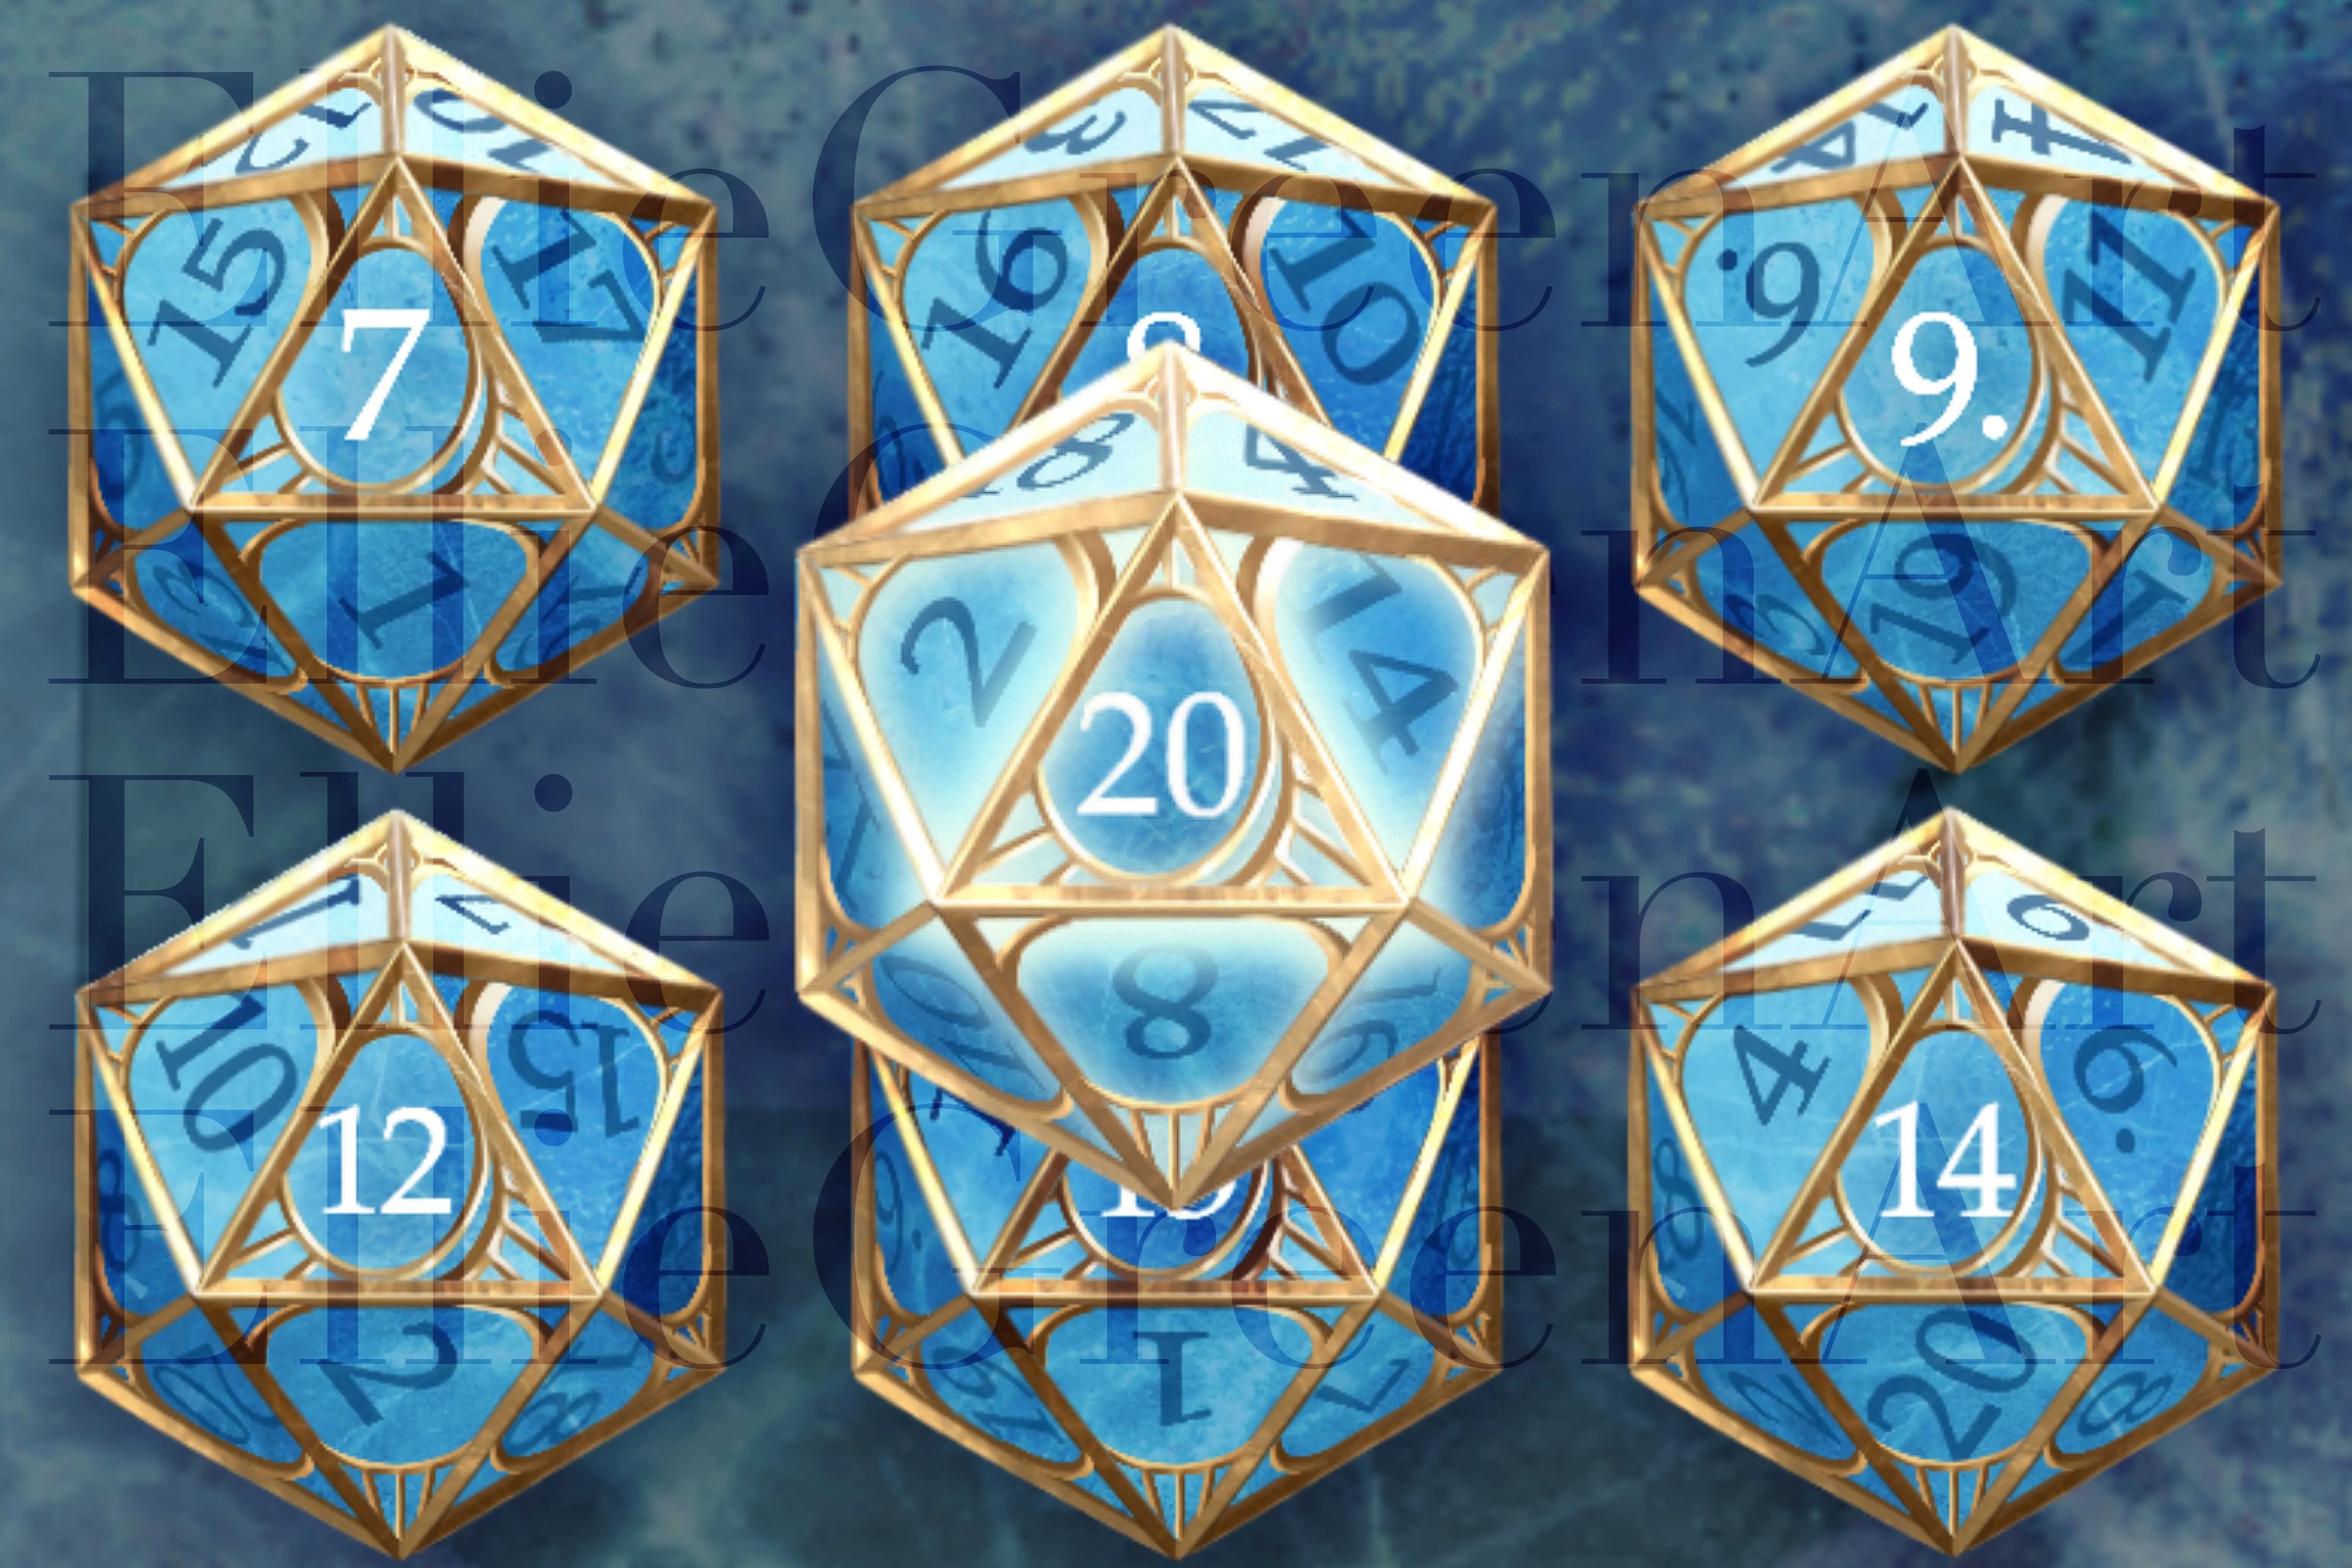 Dés en cristal bleu avec cage dorée modifiés dans Baldur's Gate 3